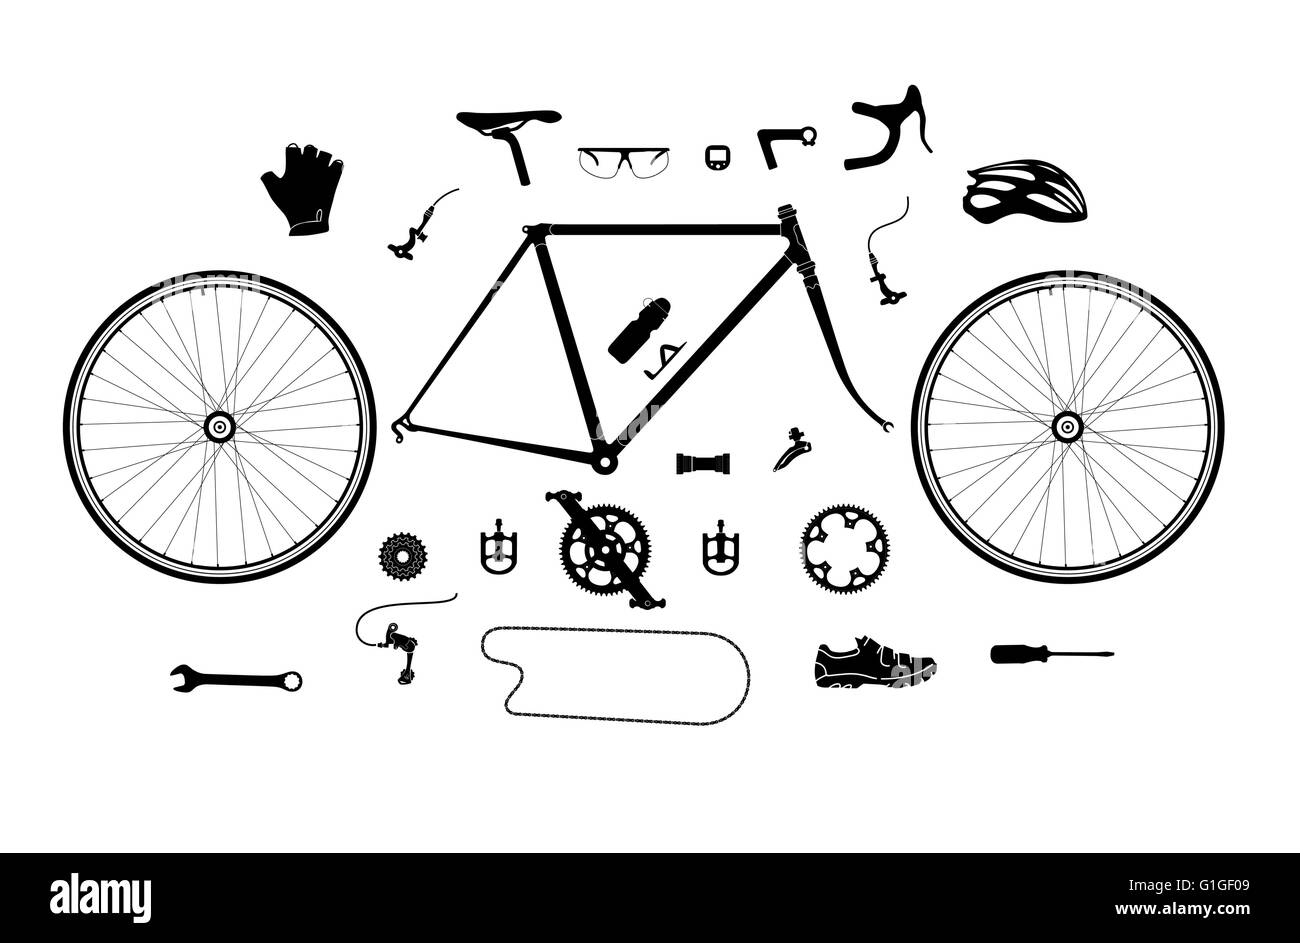 Straße Fahrrad Teile und Zubehör Silhouette setzen, Elemente für  Infografik, etc Stock-Vektorgrafik - Alamy